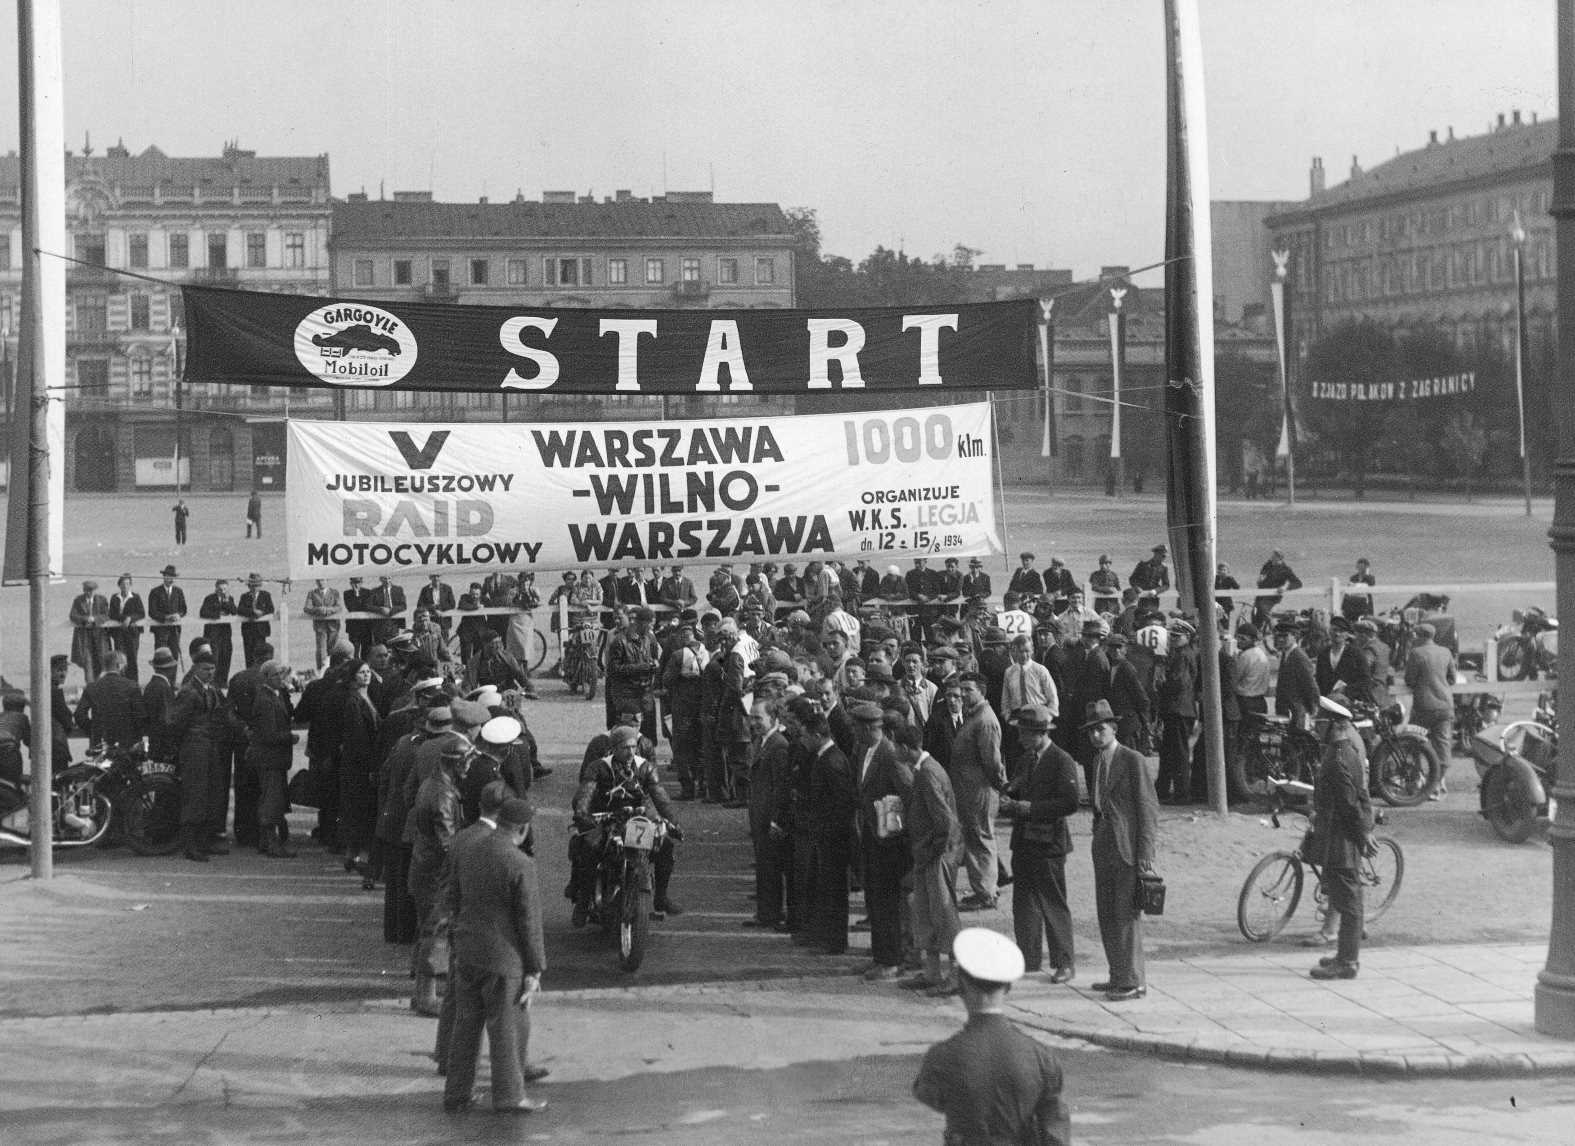 Plac Piłsudskiego, czyli dawny plac Saski, zdjęcie z okresu międzywojennego. Między dwoma masztami flagowymi rozwieszone są dwa pasy z napisami start i nazwą rajdu motocyklowego Warszawa-Wilno-Warszawa. Pod nimi wyjeżdża motocyklista otoczonymi gapiami. W tle pierzeje kamienic okalające plac.